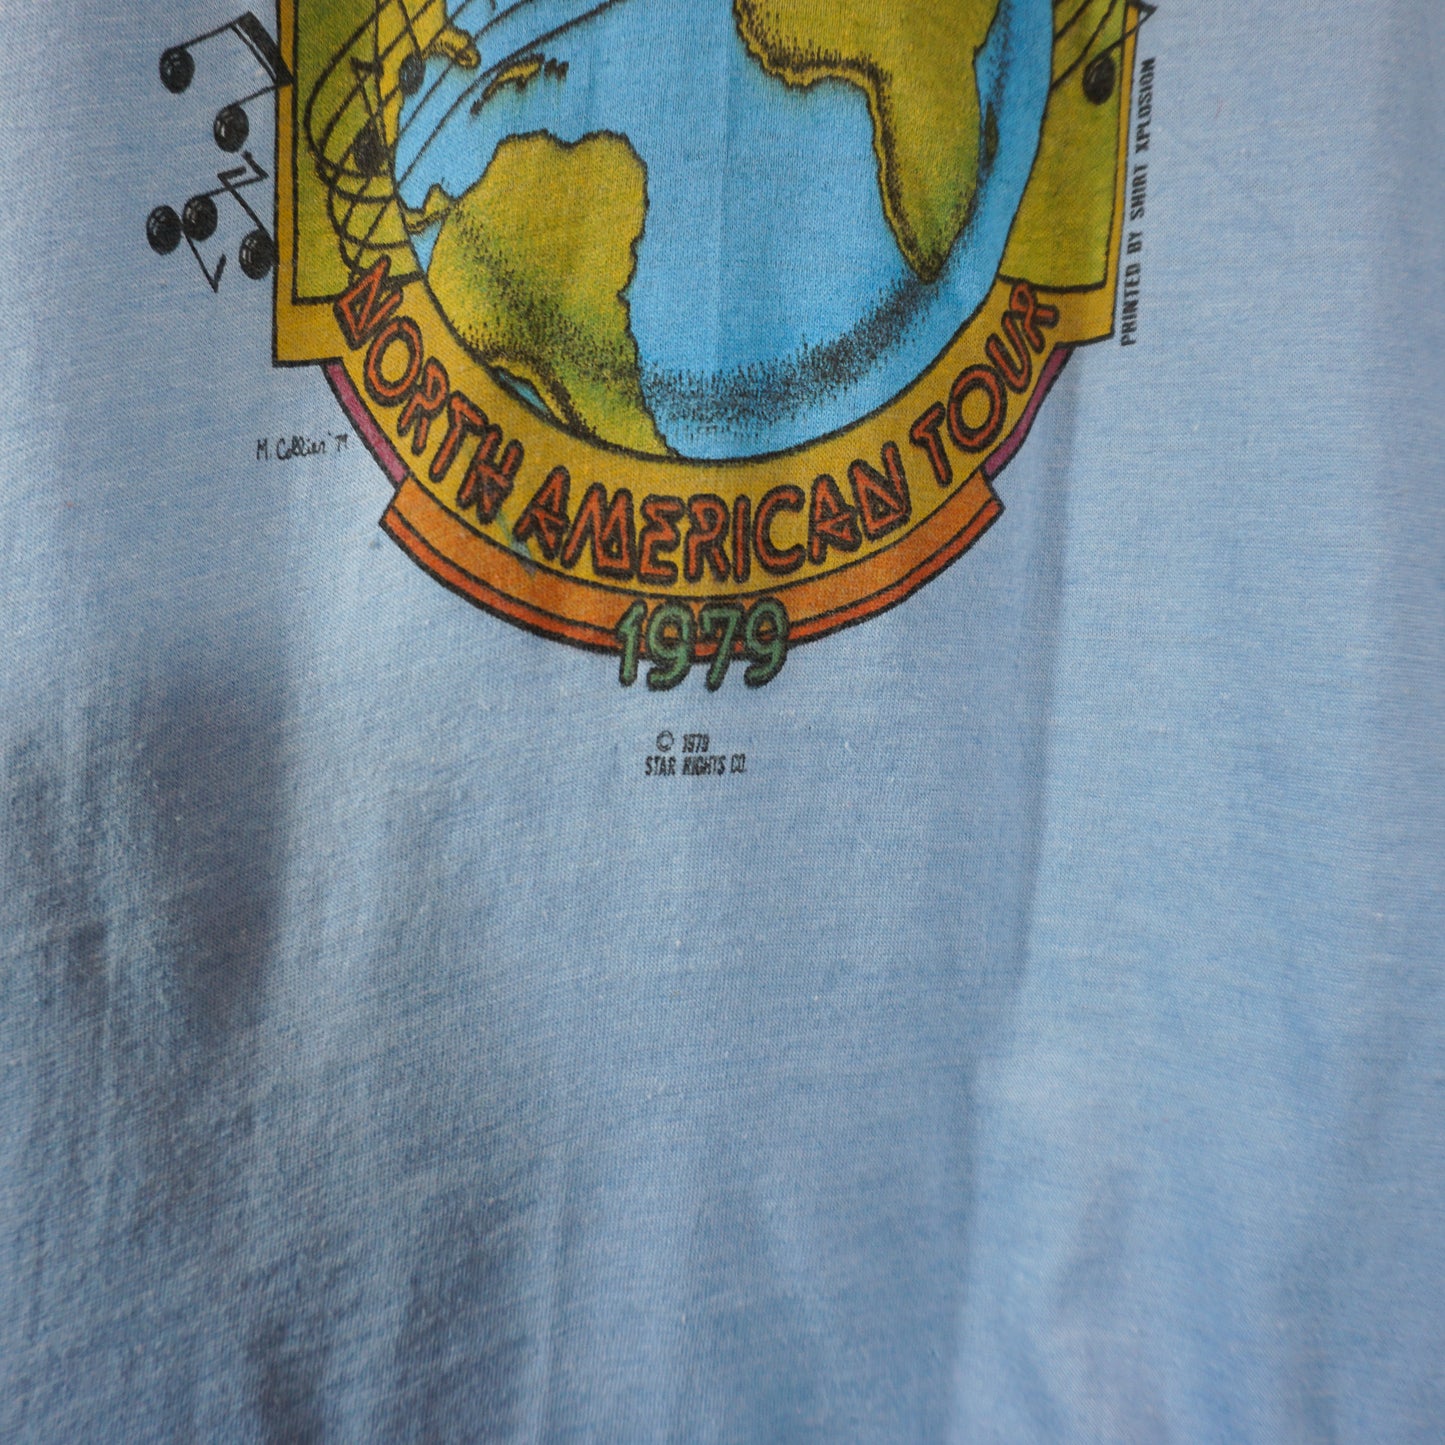 T-shirt de la tournée Who en Amérique du Nord 1979 (S)